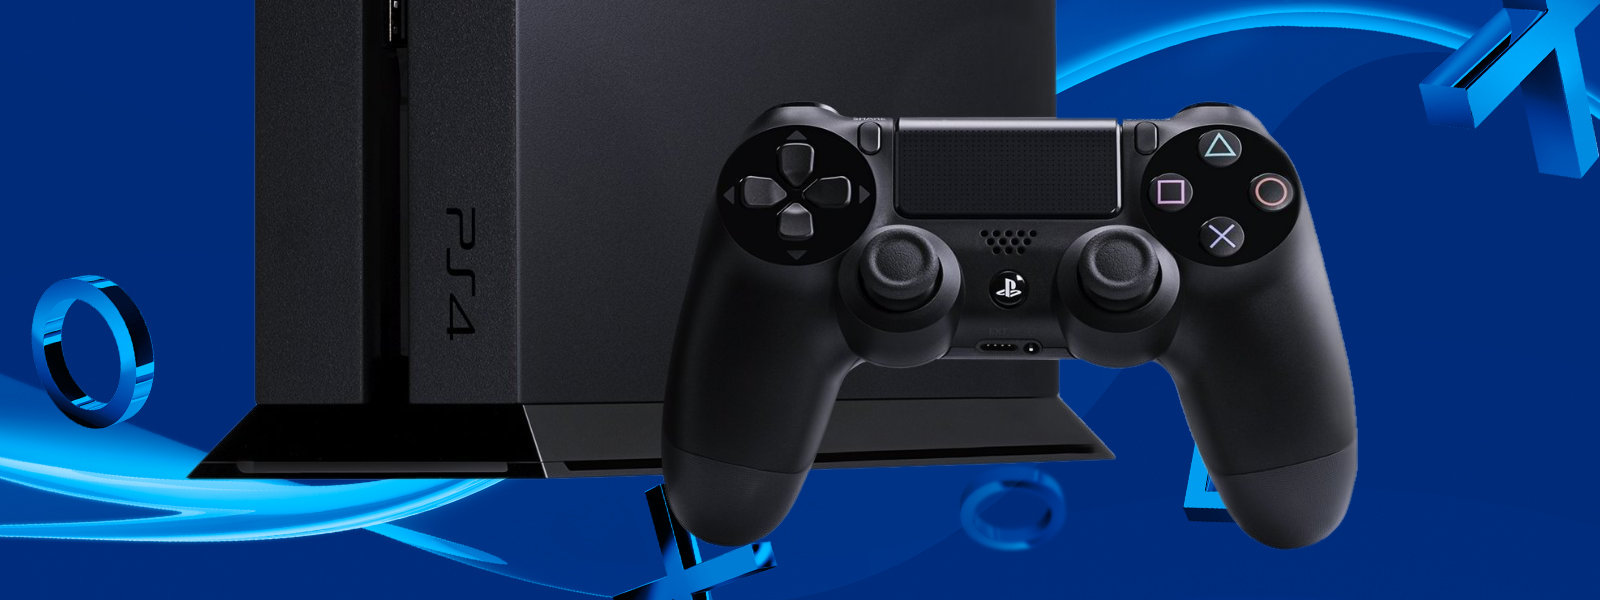 Immagine pubblicata in relazione al seguente contenuto: Sony conferma il lancio della PlayStation 4 che supporta il gaming in 4K | Nome immagine: news24406_Sony-PlayStation-4_1.jpg